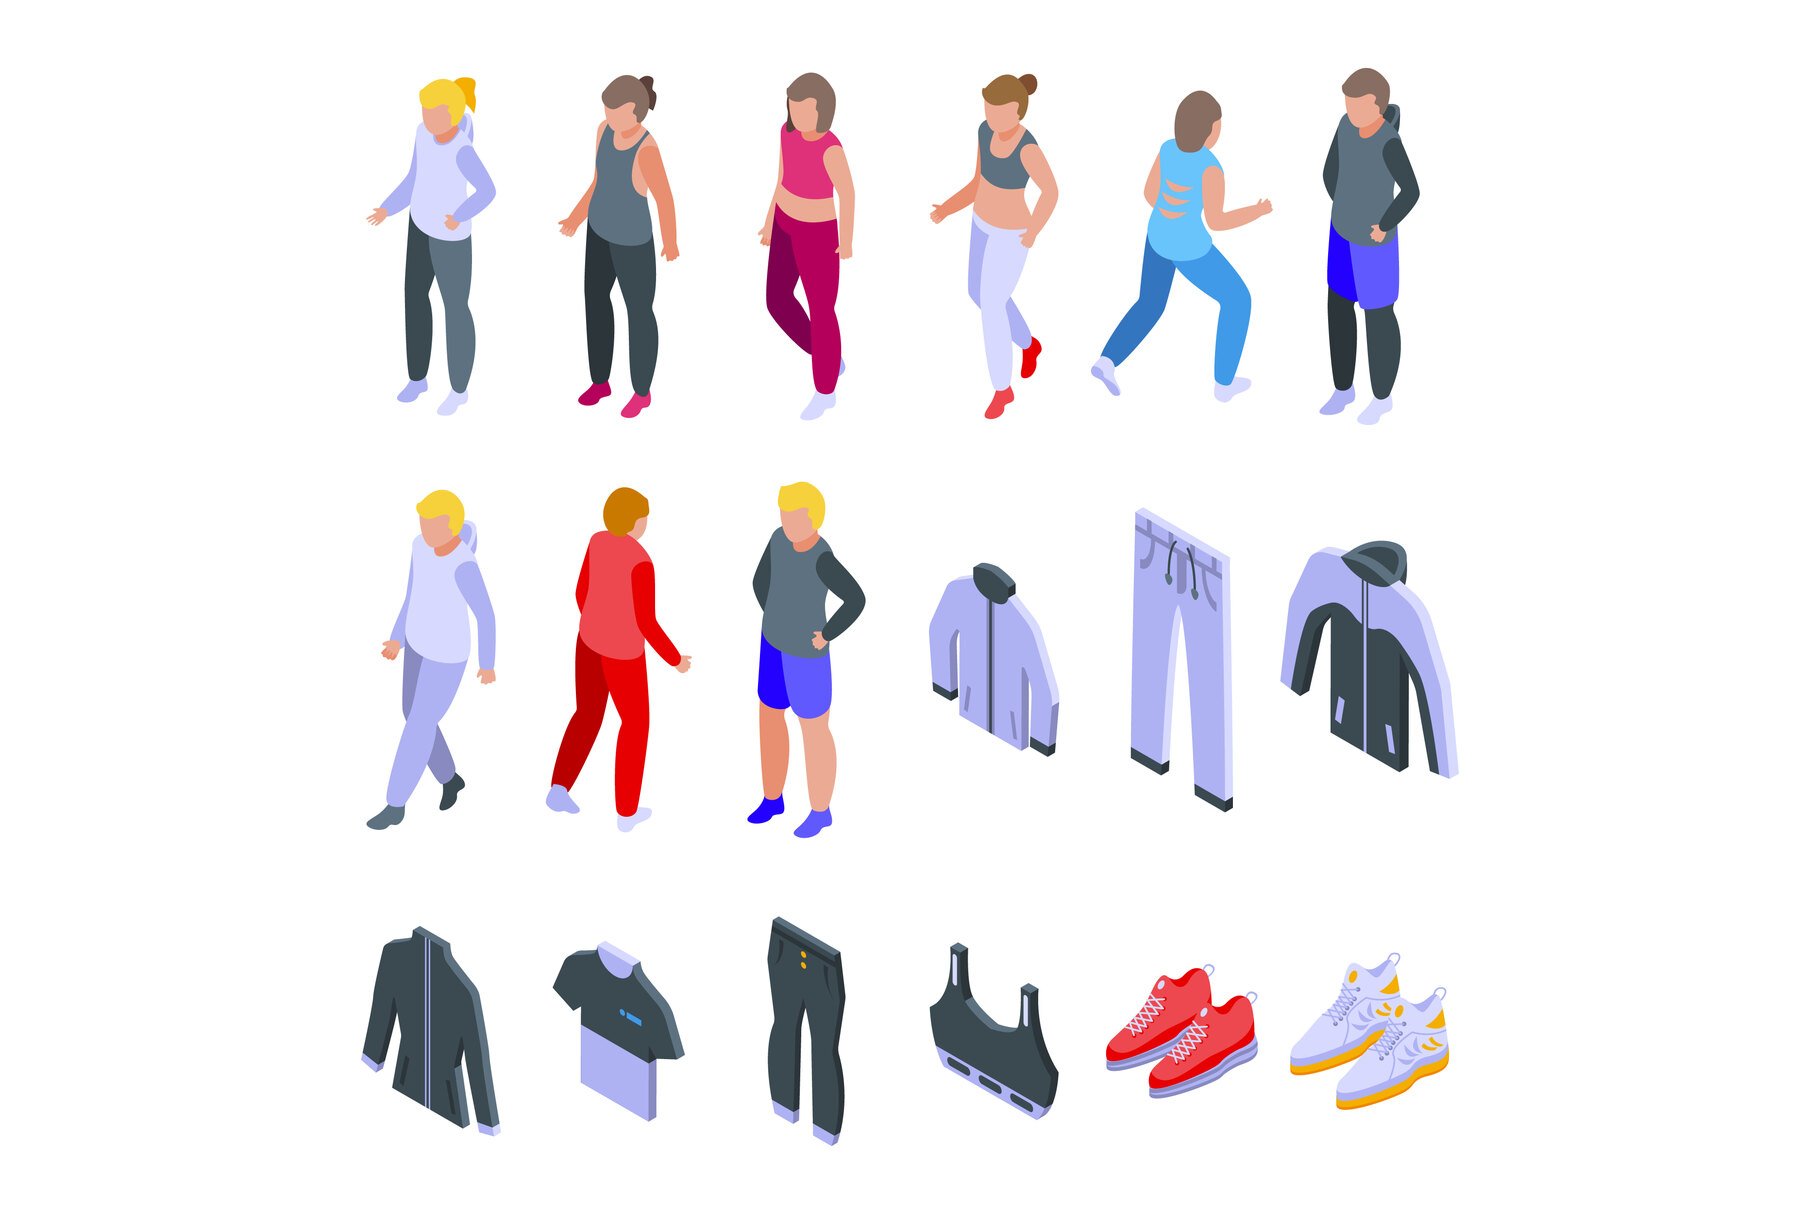 Workout fashion icons set isometric cover image.